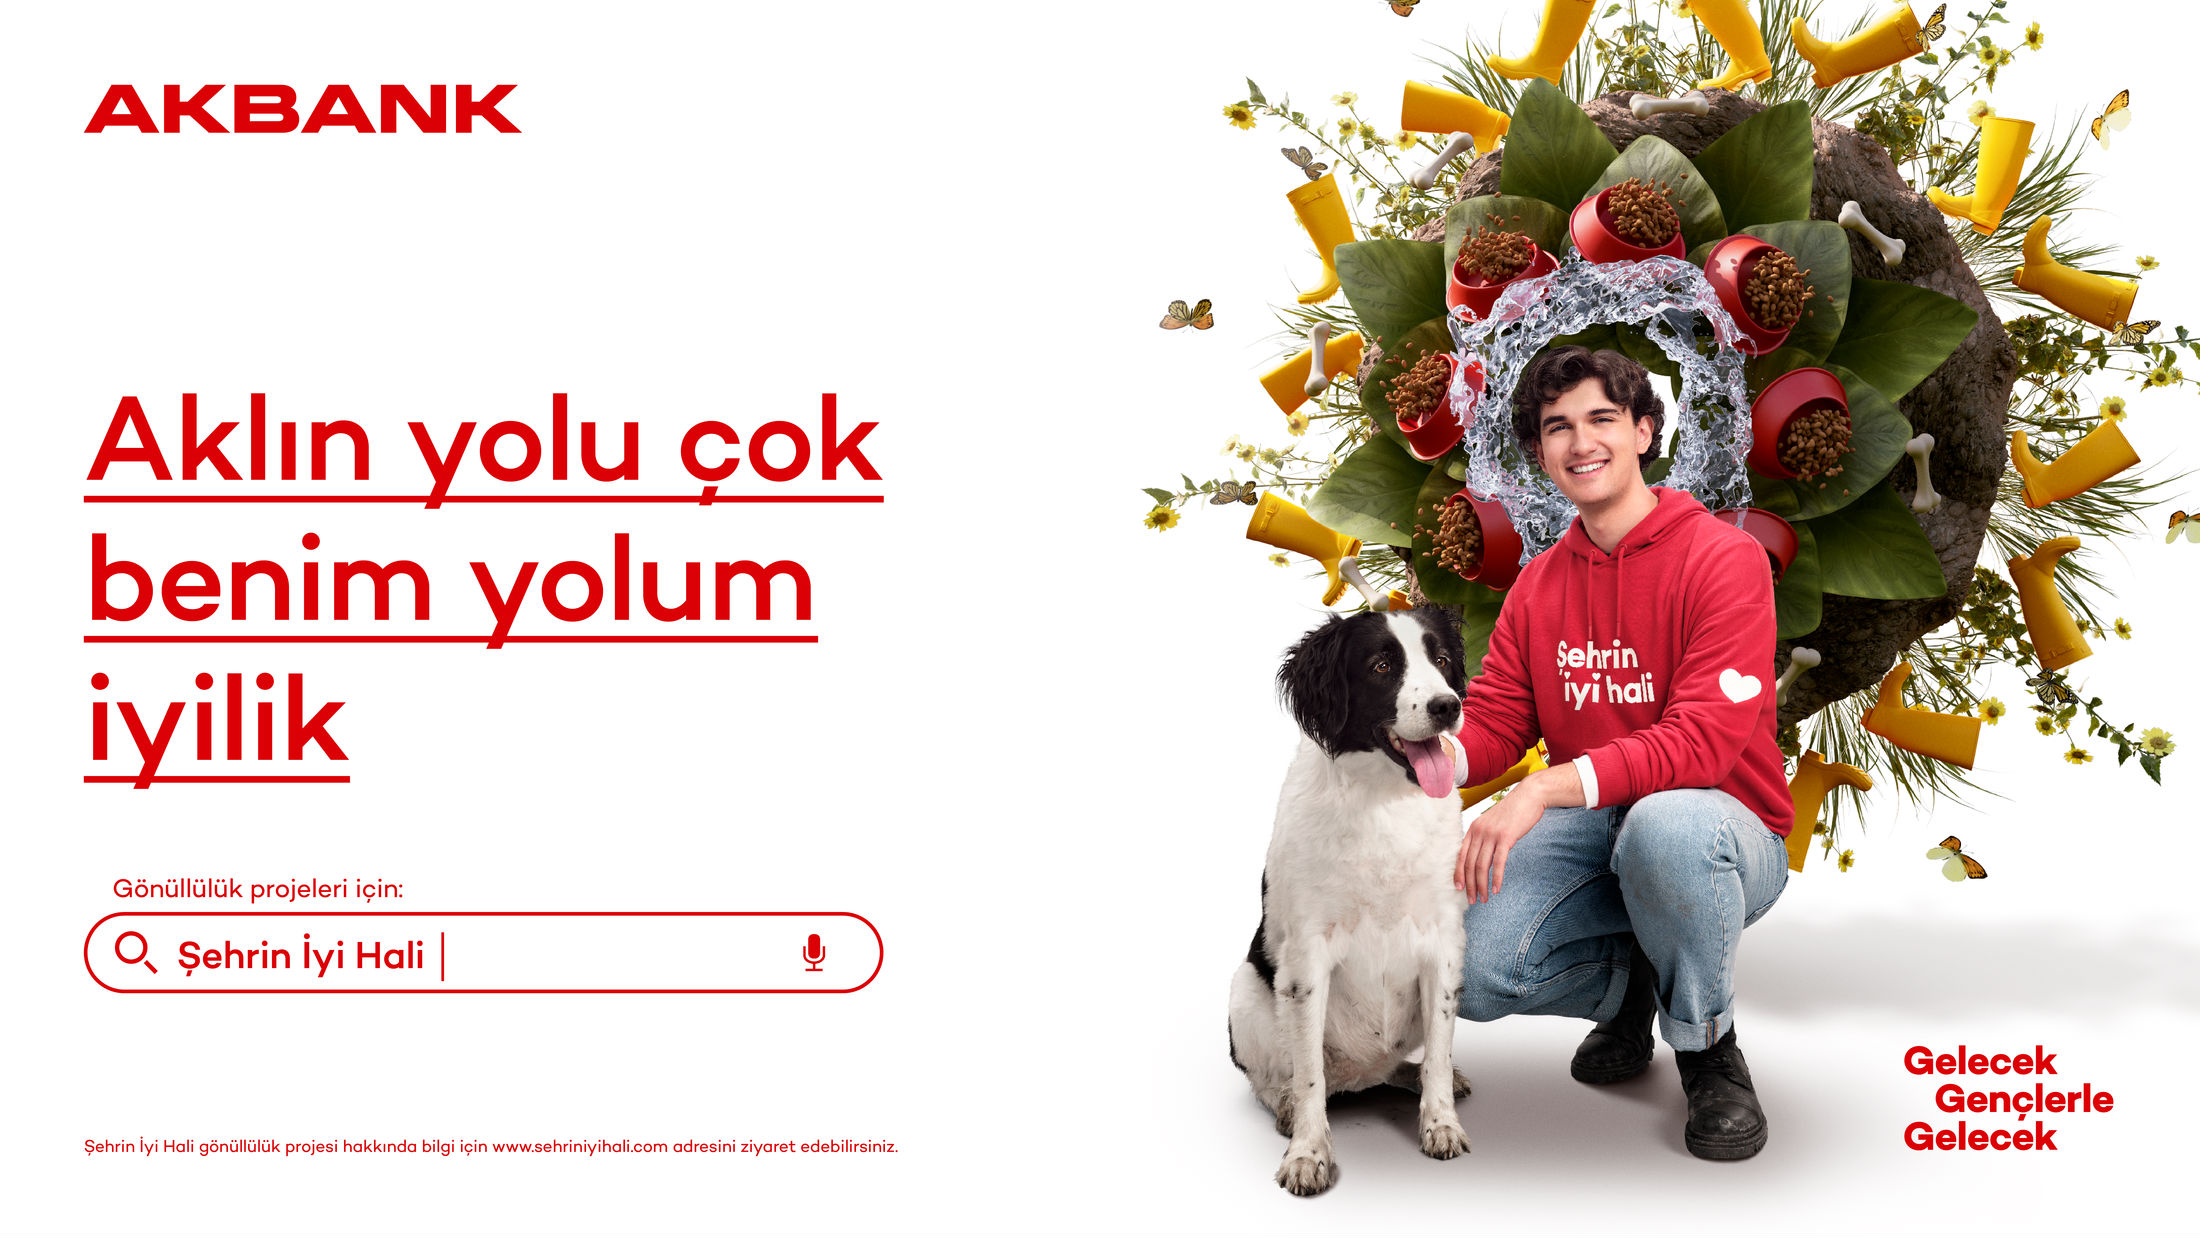 广告设计 . 土耳其Akbank“伟大的头脑独立思考”的专业运动广告设计